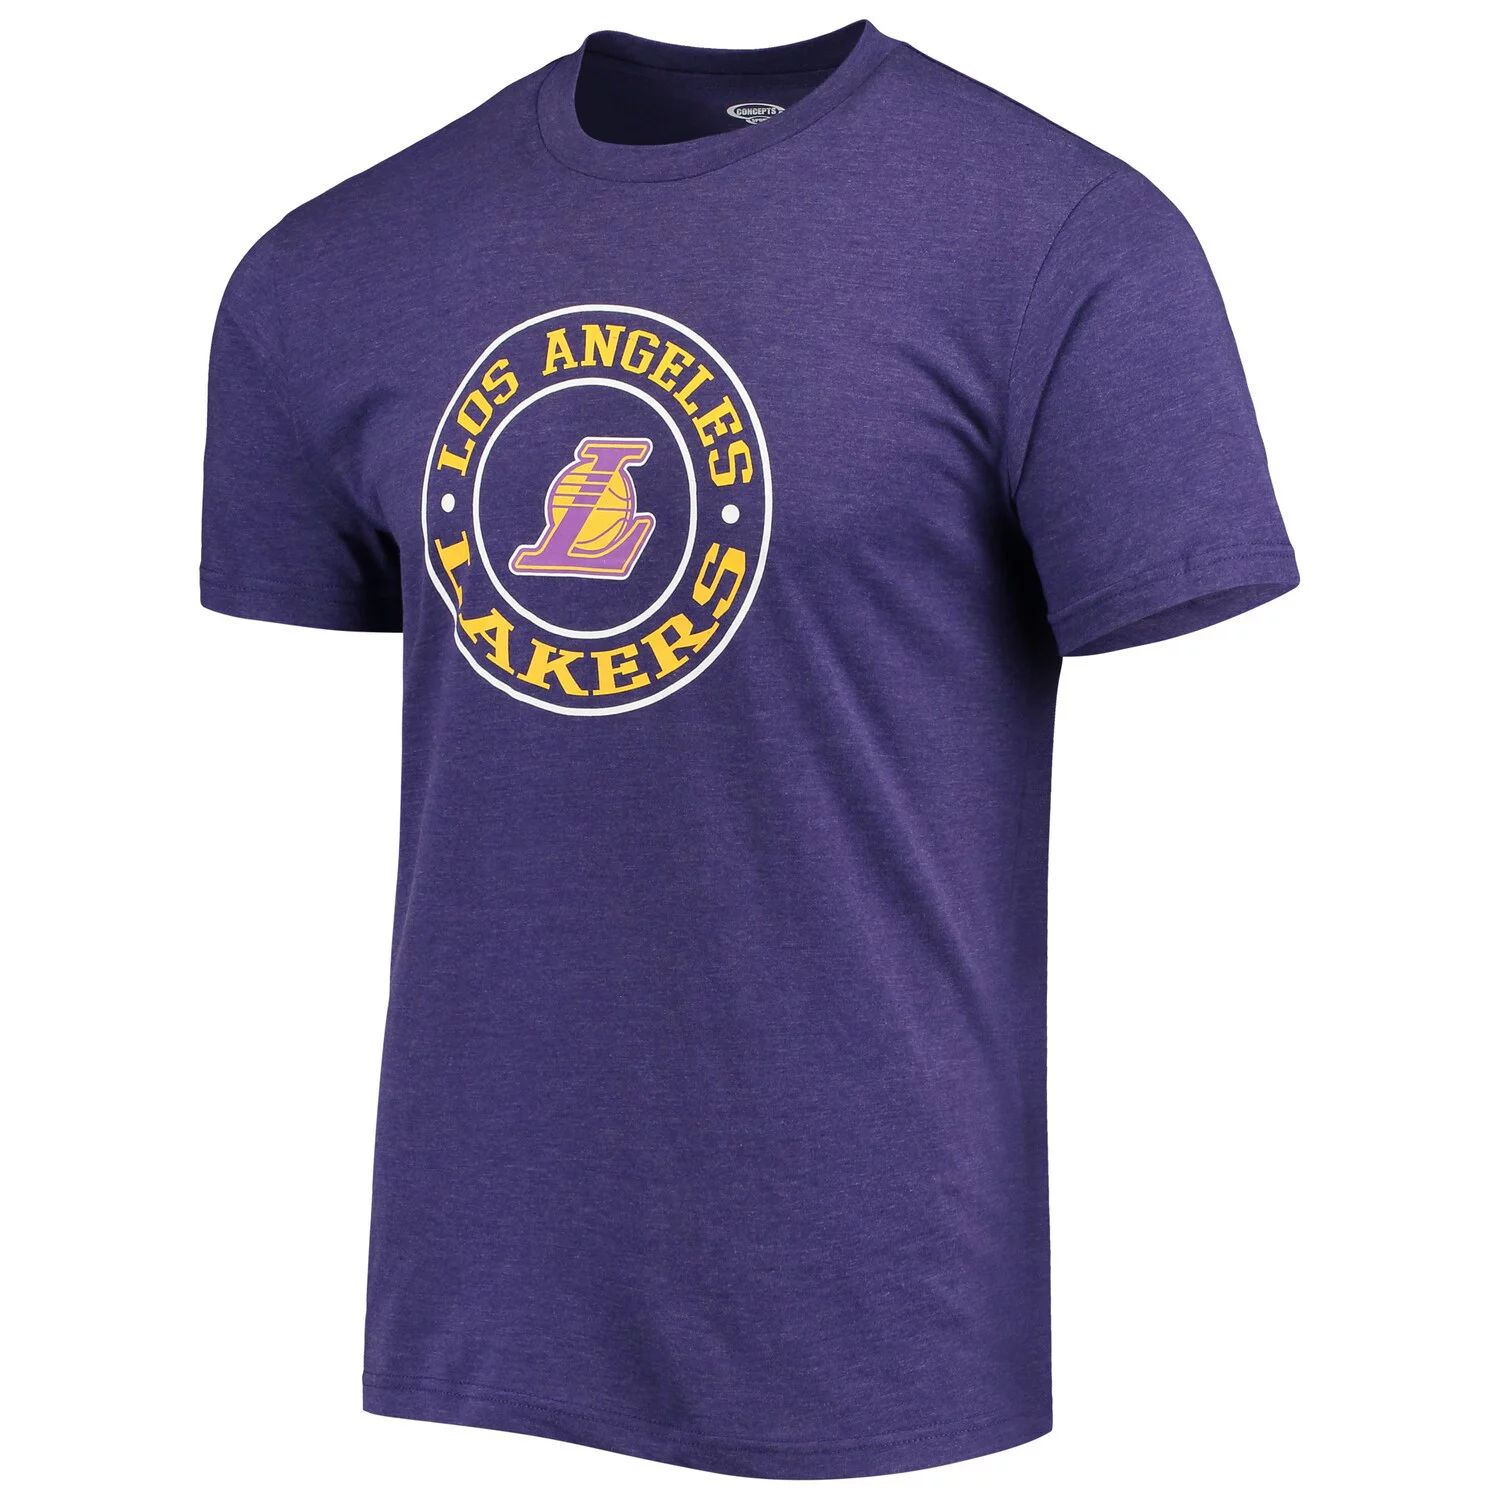 Мужской комплект для сна с футболкой и шортами для сна Лос-Анджелес Лейкерс черного/фиолетового цвета Concepts Sport